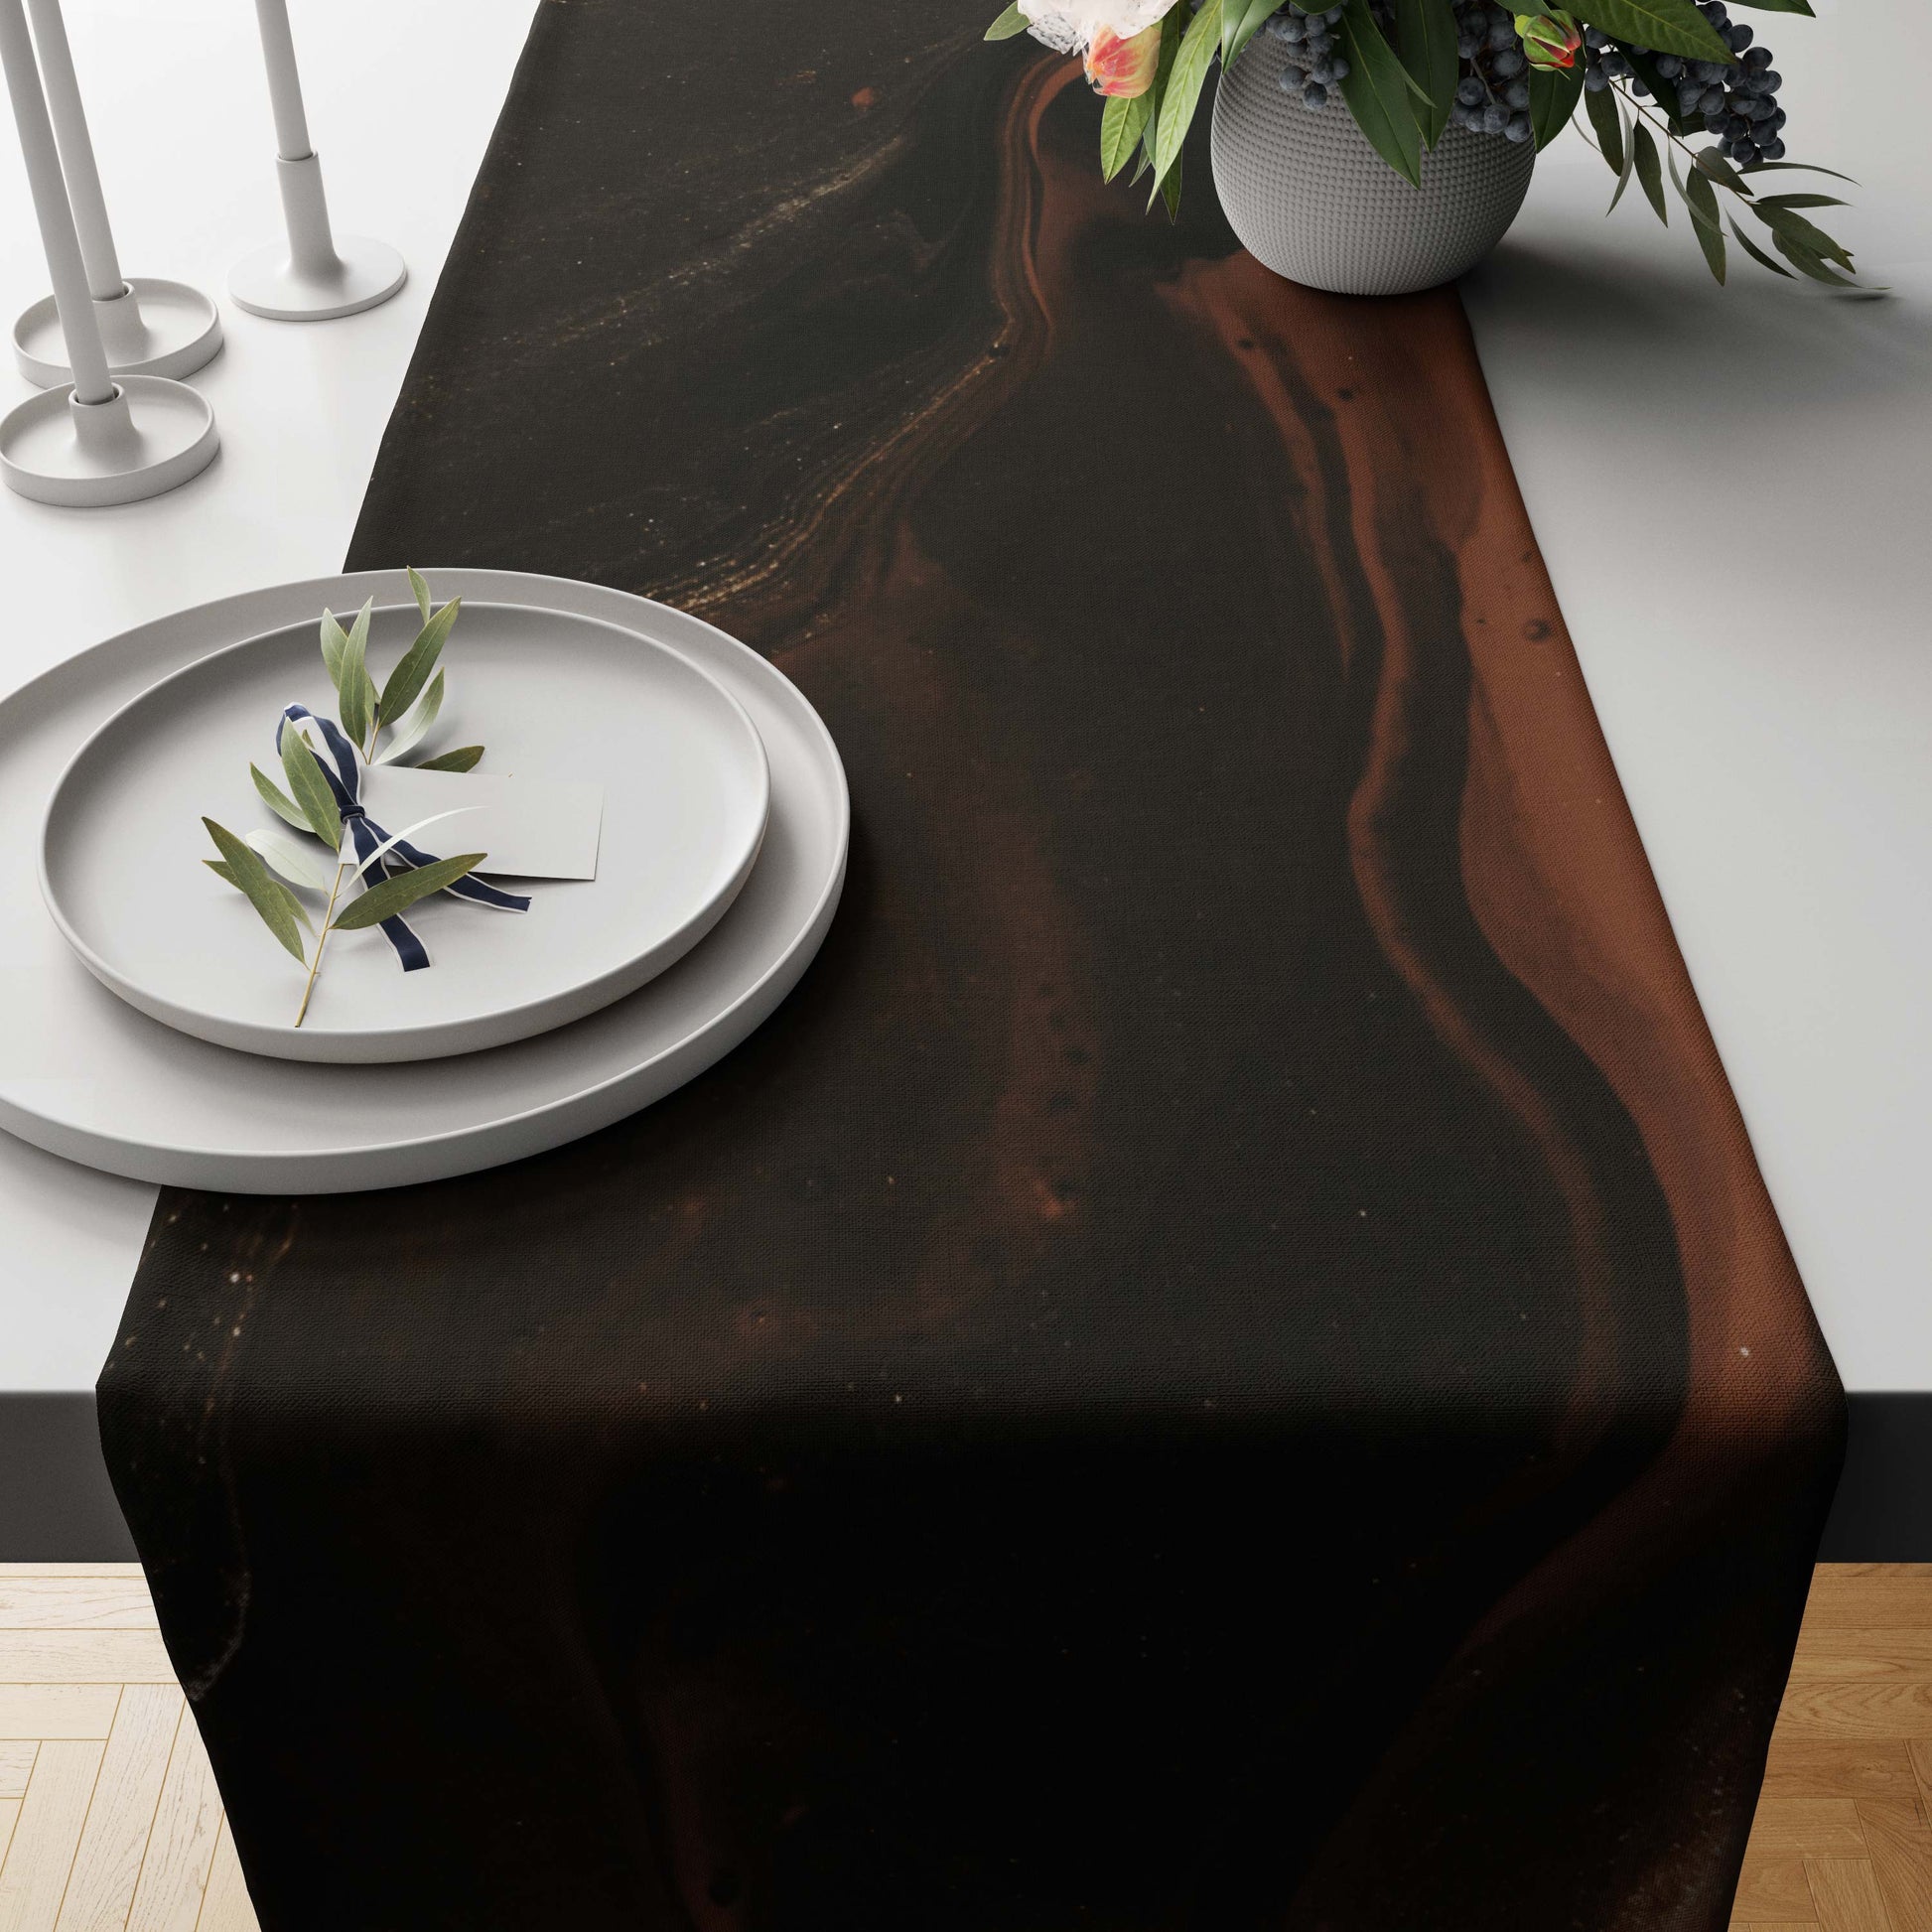 Zinc Stromatolite Marble-Stone Table Runner trendy home